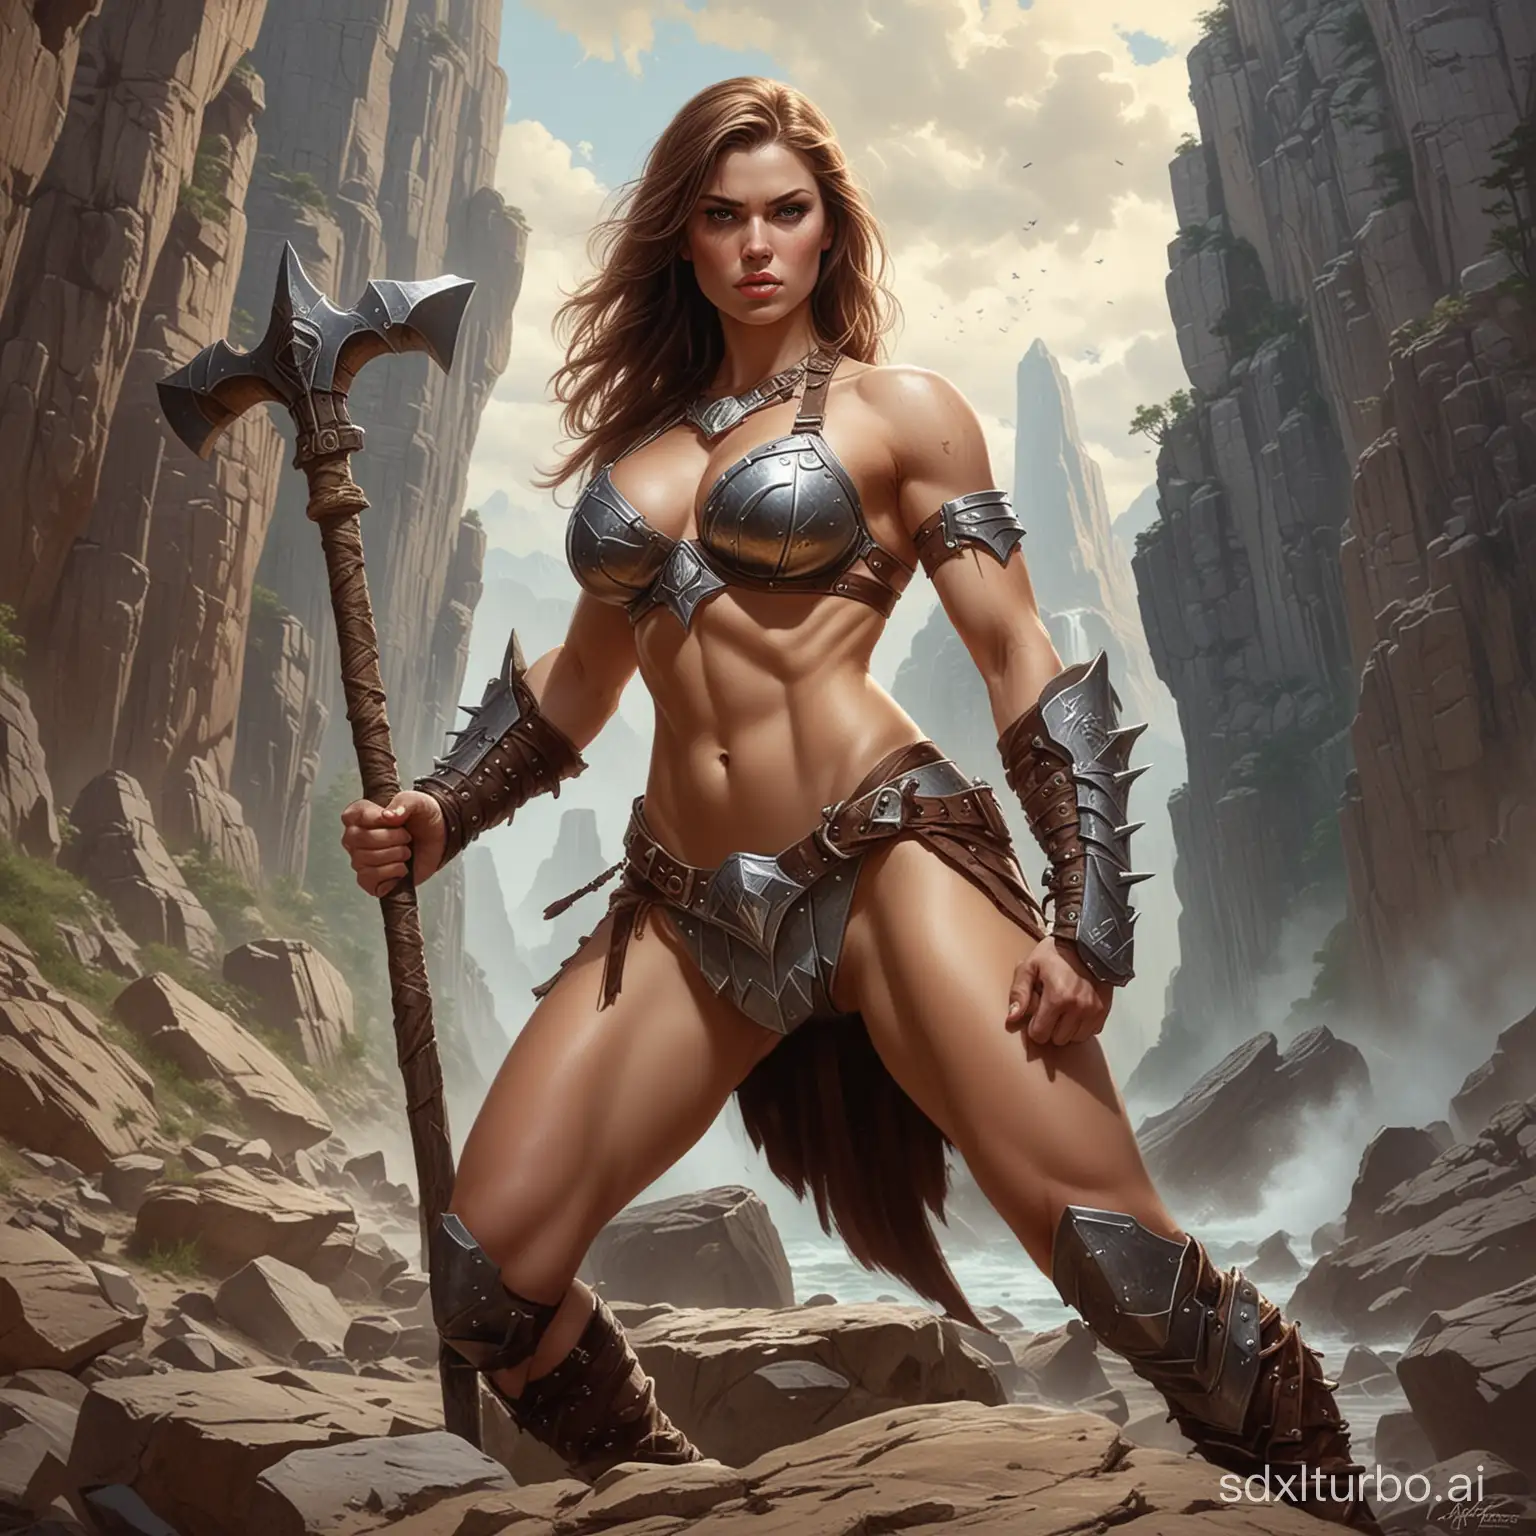 Fierce-Berserker-Woman-in-Bikini-Armor-Wielding-Hammer-on-Jagged-Rock